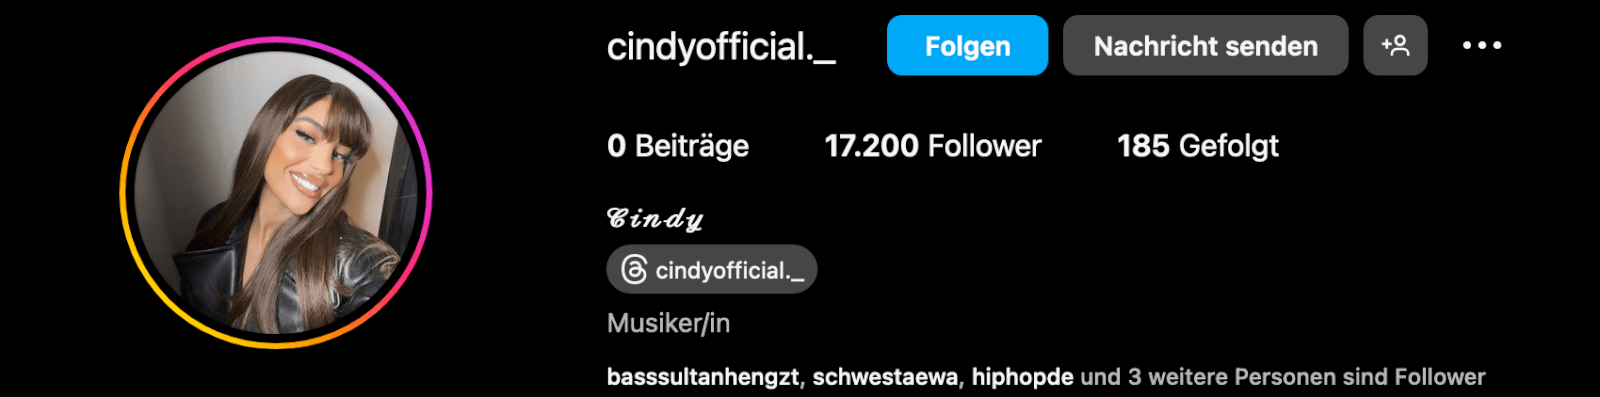 Instagram-Profil von Cindy